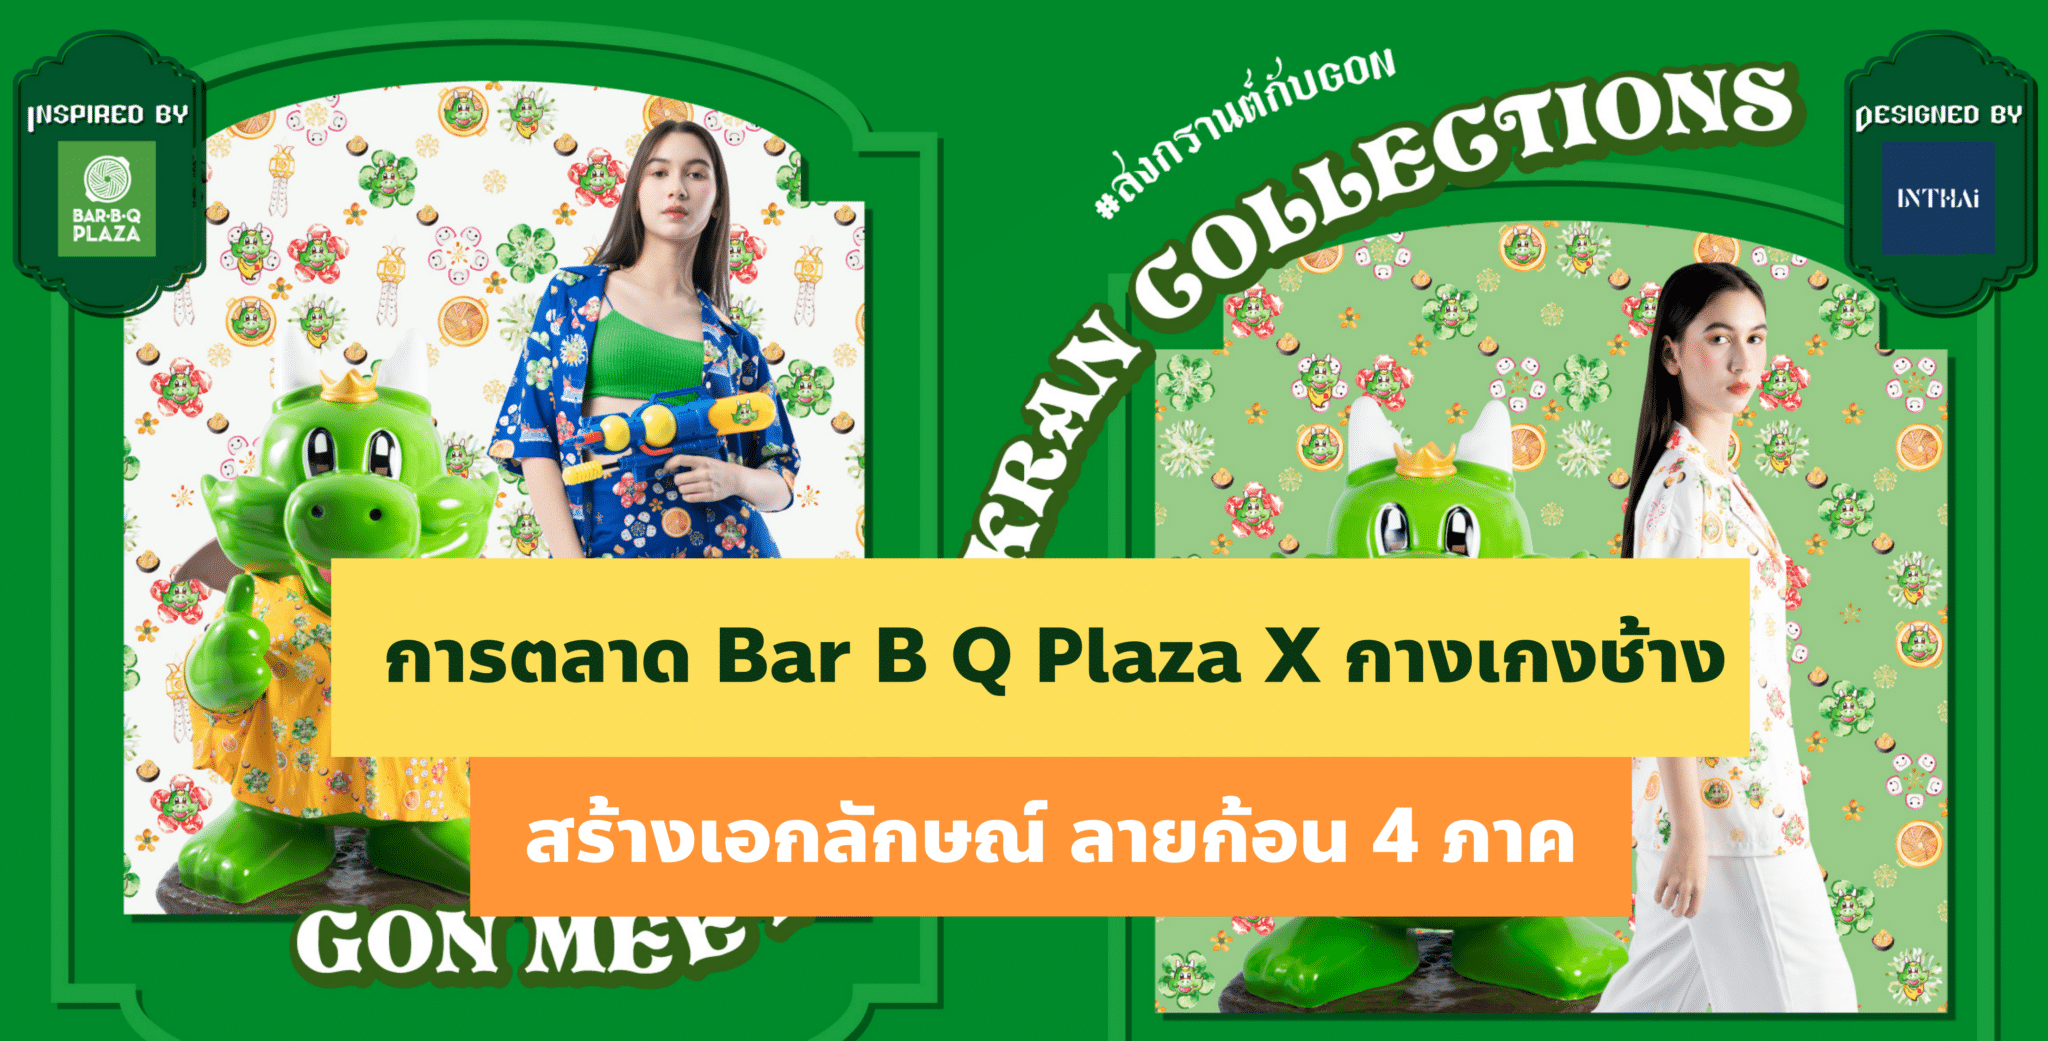 การตลาด Bar B Q Plaza X กางเกงช้าง สร้างเอกลักษณ์ ลายก้อน 4 ภาค